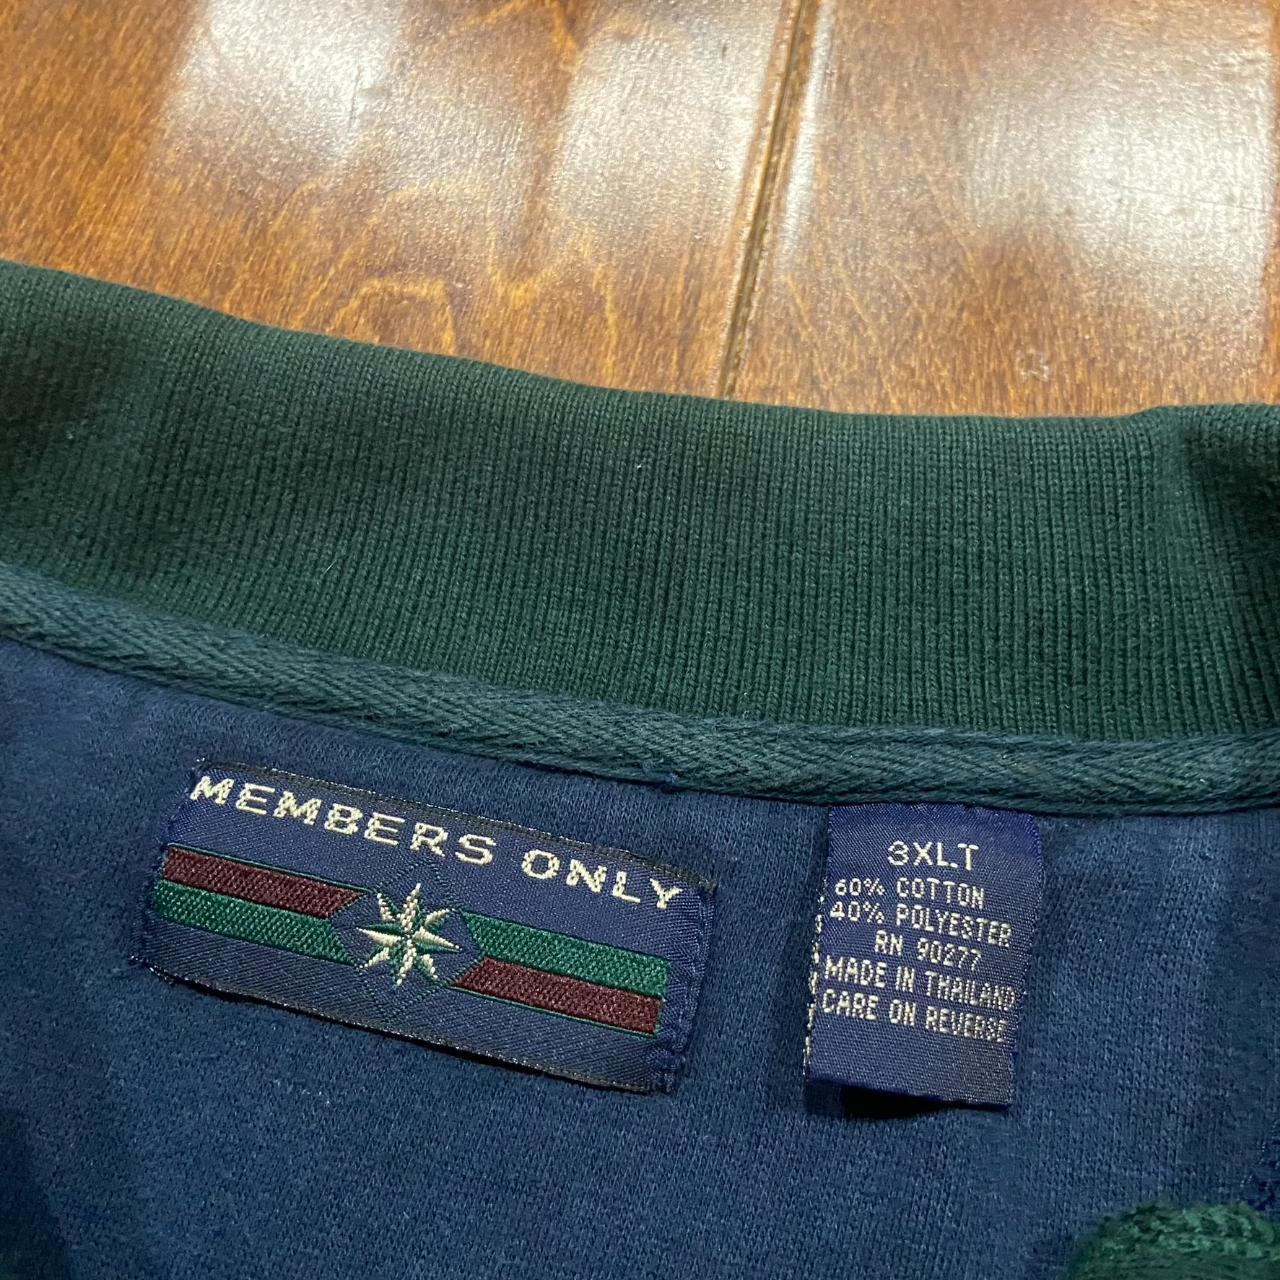 Members Only Men's Navy and Green Sweatshirt (5)